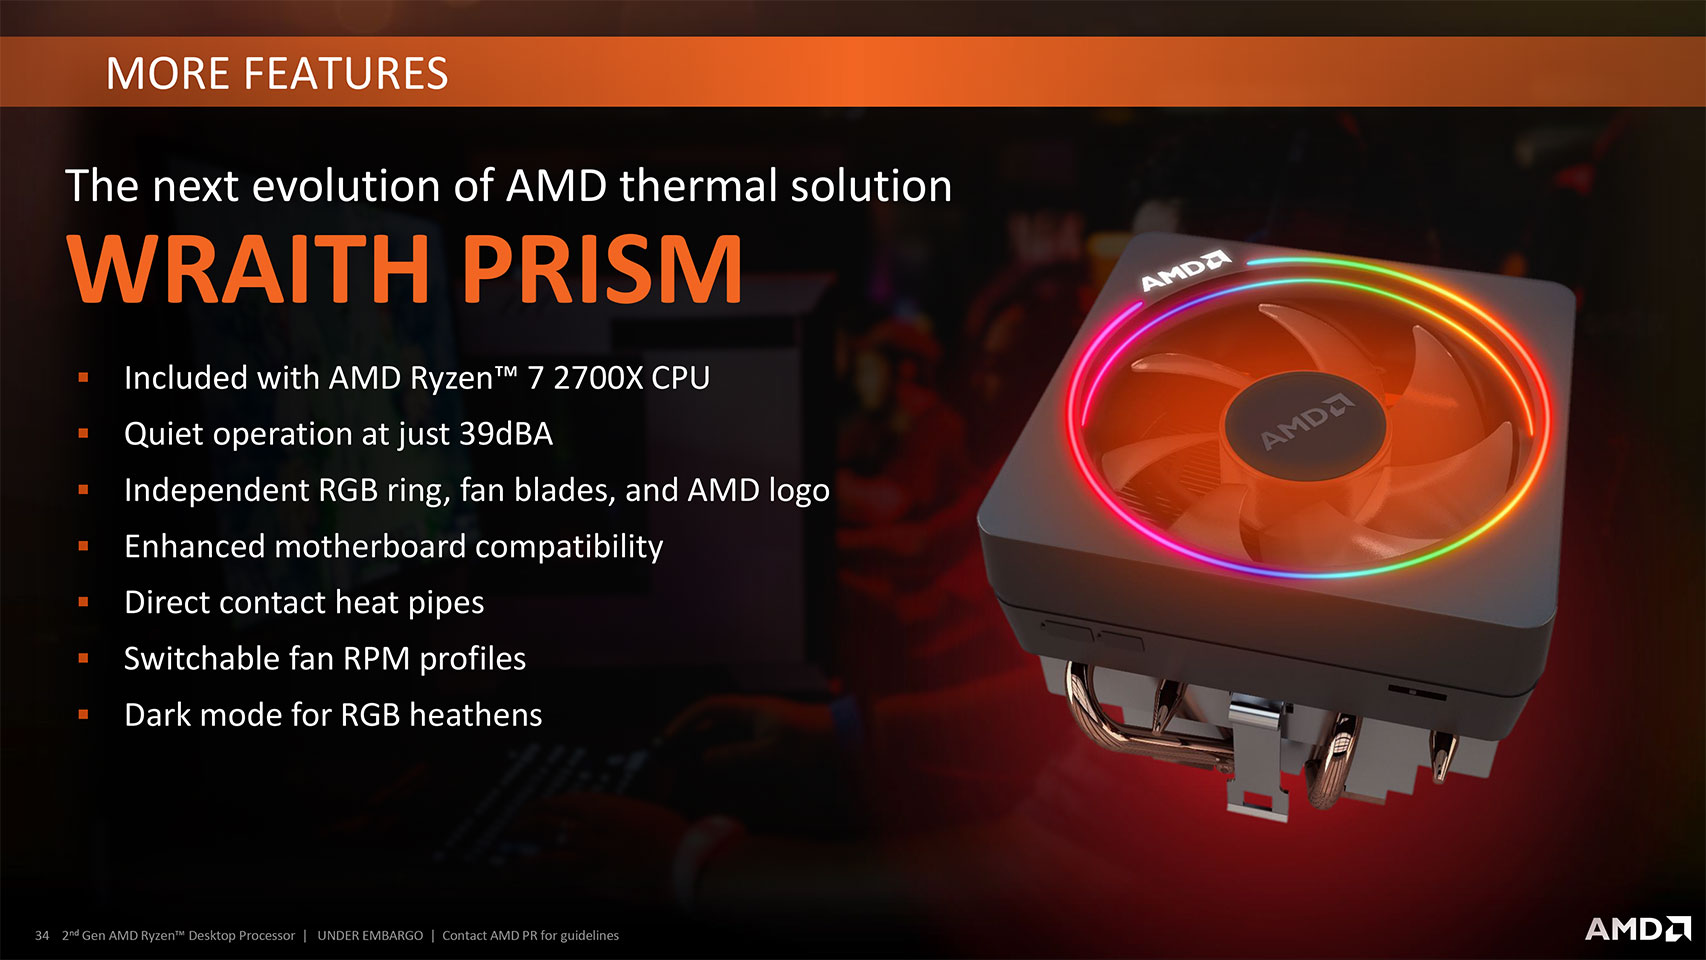 AMD Ryzen 7 2700X 3.7 GHz Review - A Closer Look | TechPowerUp